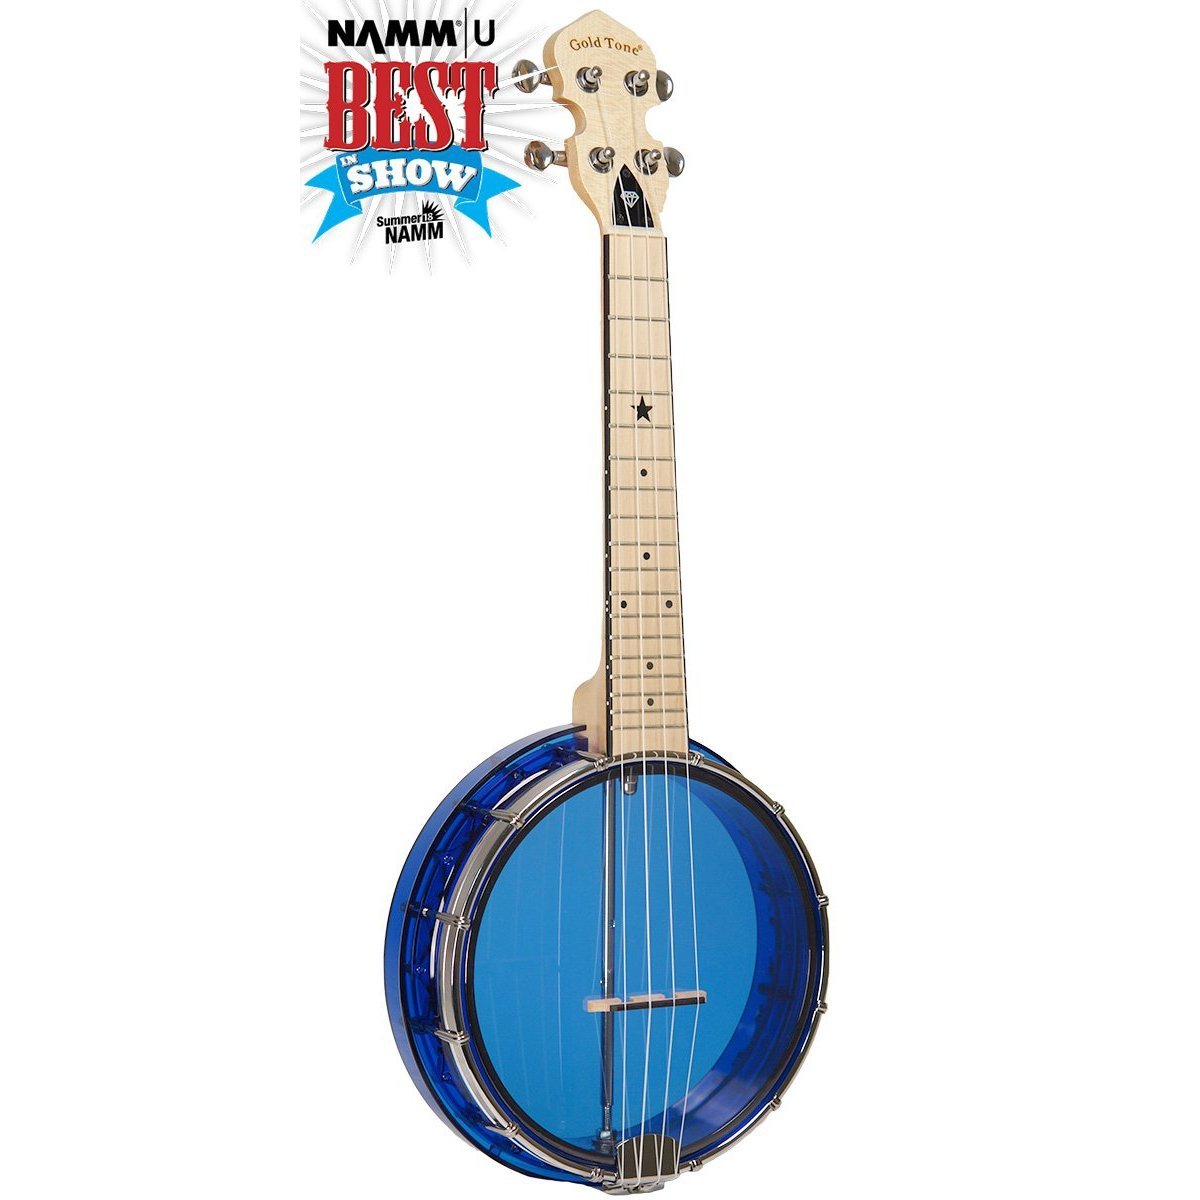 Gold Tone LG-S Little Gem Sapphire Banjo Ukulele with Gig Bag-Blue-Music World Academy